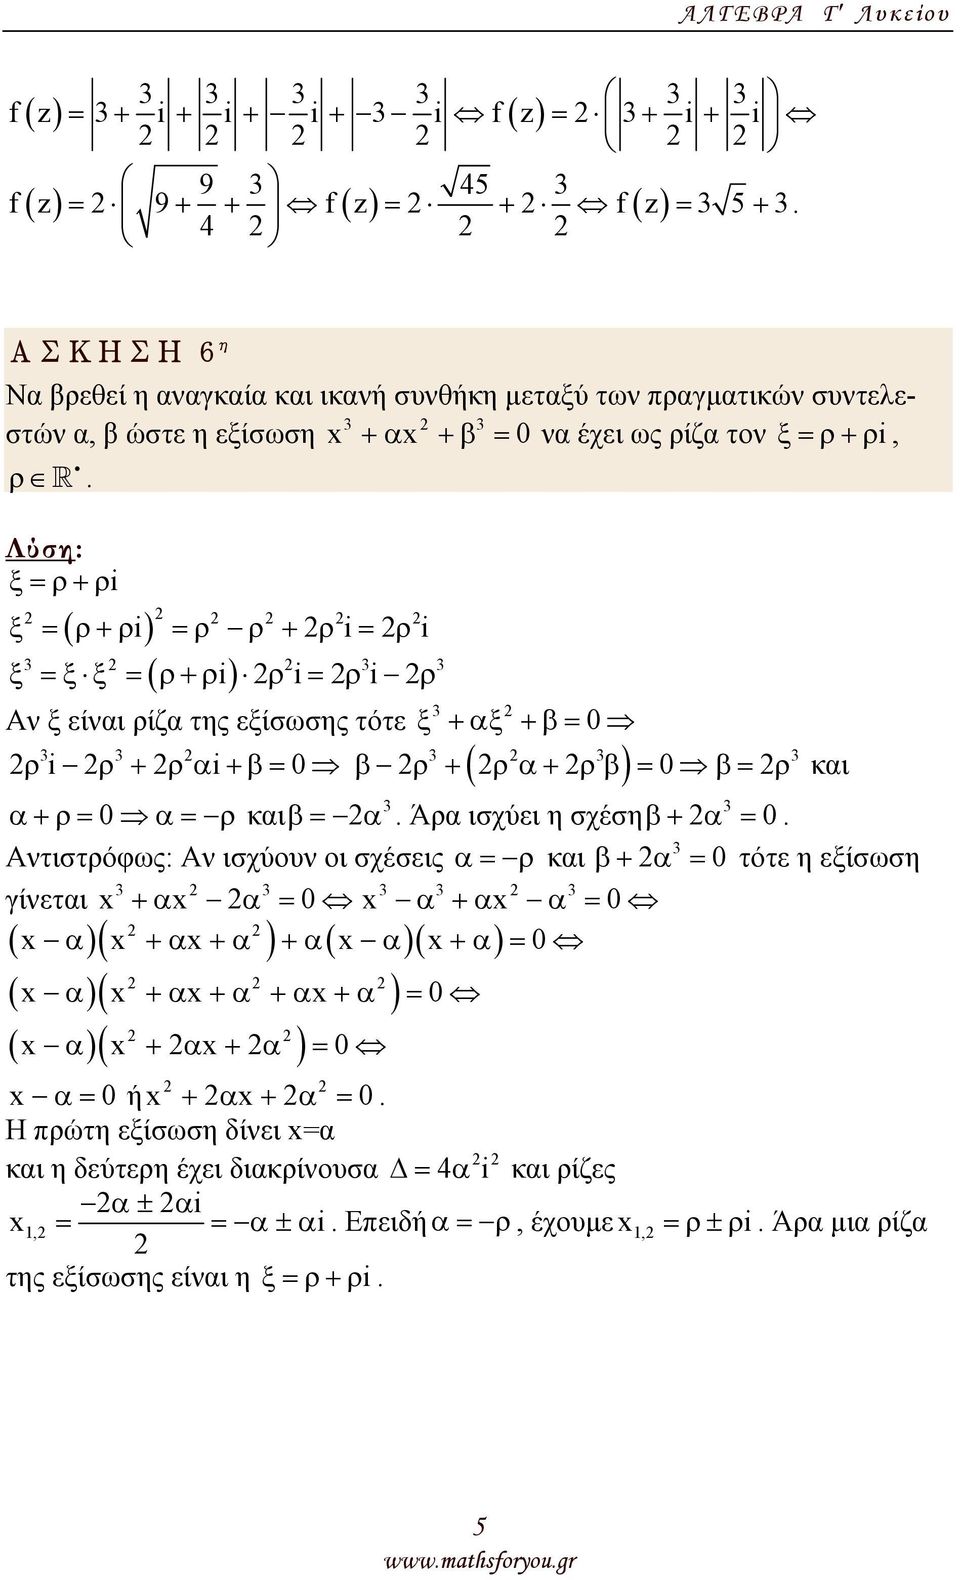 α = 0 α+ρ= 0 α= ρ καιβ= Ατιστρόφως: Α ισχύου οι σχέσεις α = ρ και γίεται x +αx α = 0 x α +αx α = 0 x α x +α x+α +α x α x+α = 0 ( x α)( x +α x +α +α x+α ) =0 ( x α)( x + α x + α ) = 0 x α = 0 ή x + α